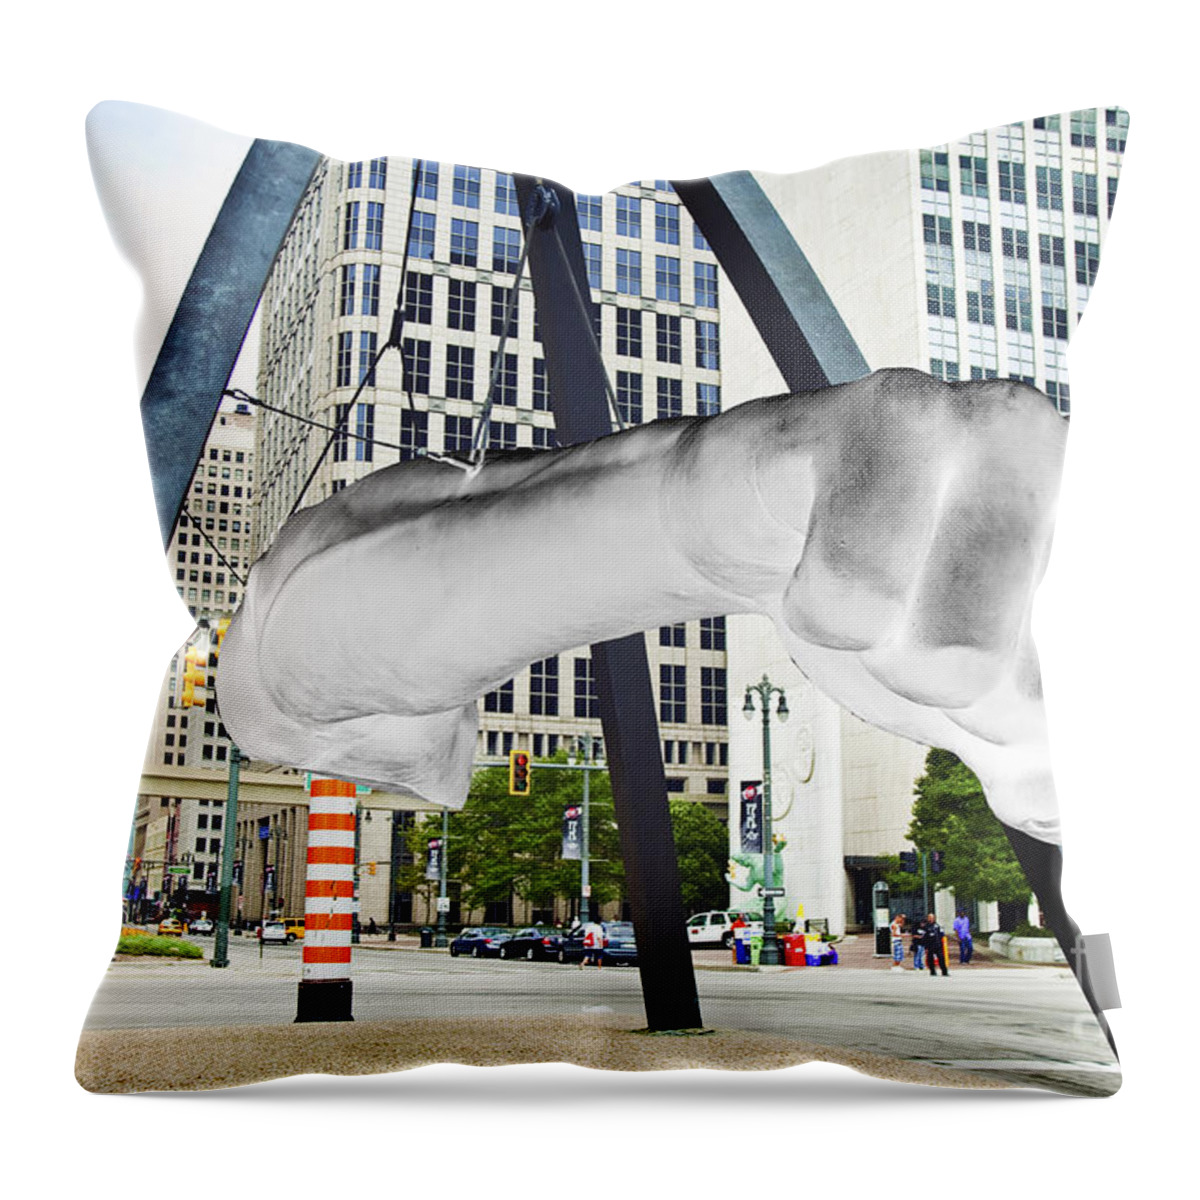 Detroit Throw Pillow featuring the photograph Detroit Fist 313 by Steven Dunn